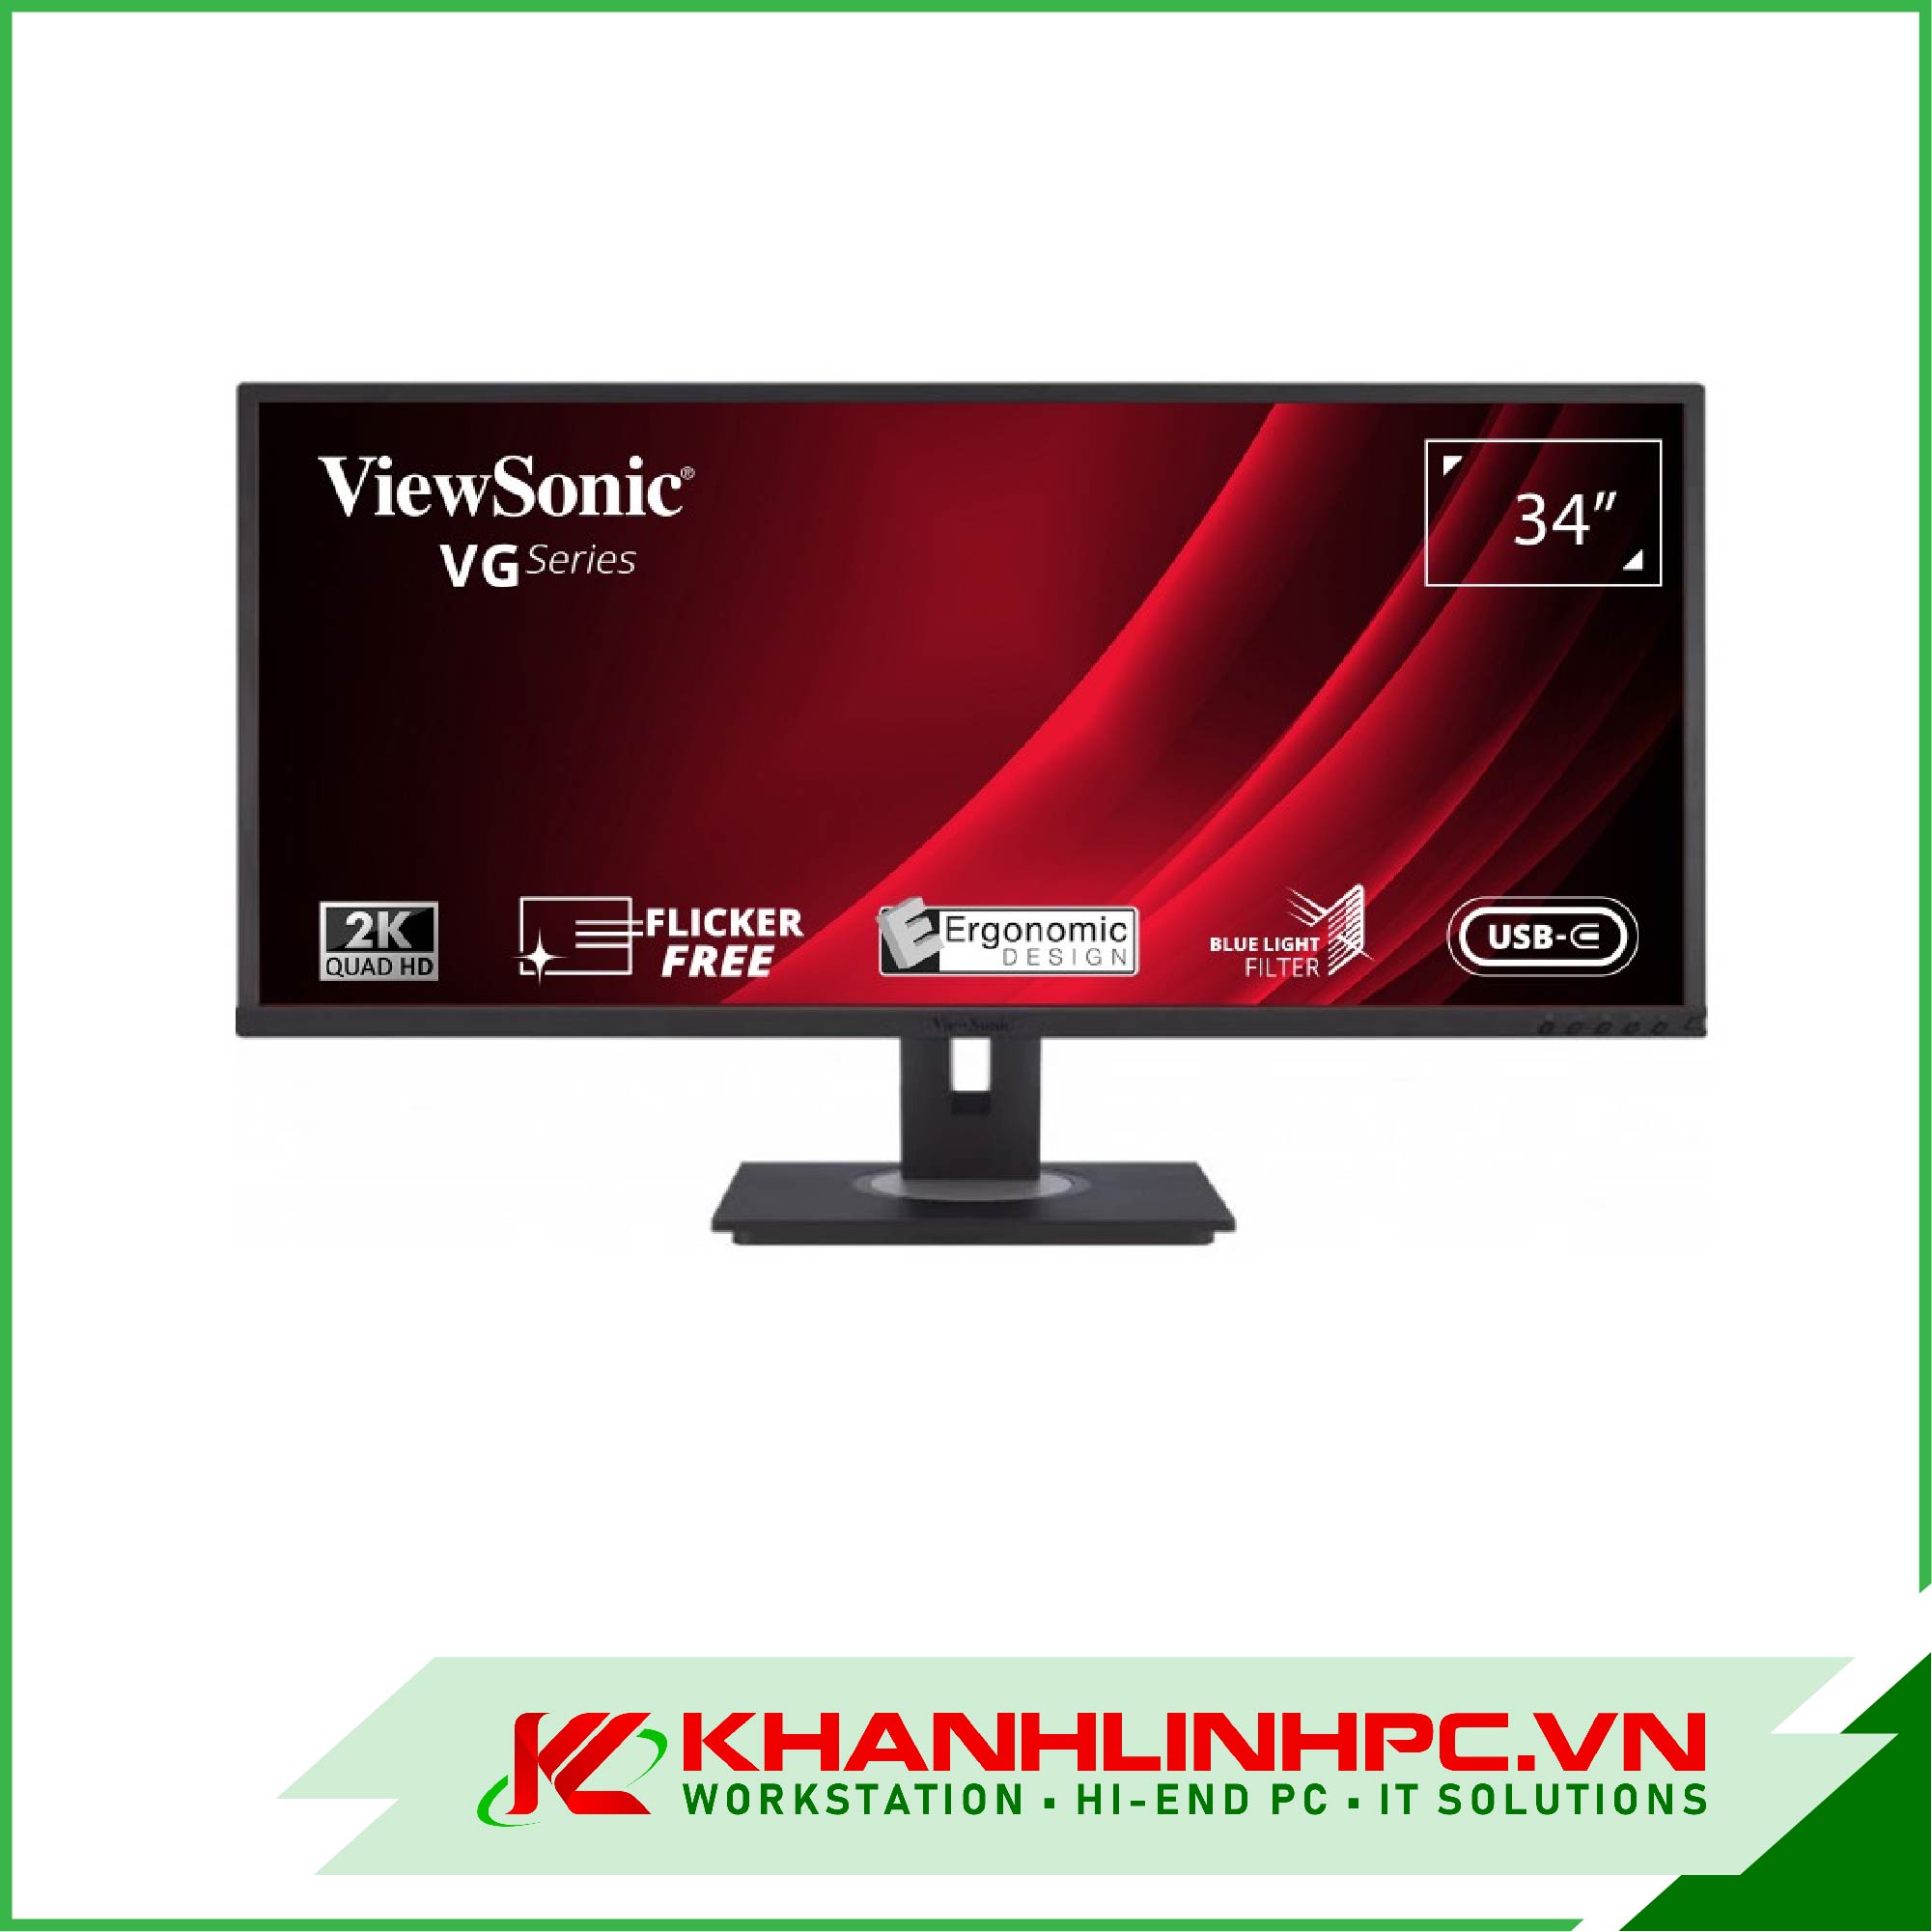 Màn Hình ViewSonic VG3456 (34inch/2K 300nits/USB C/RJ45 LAN)